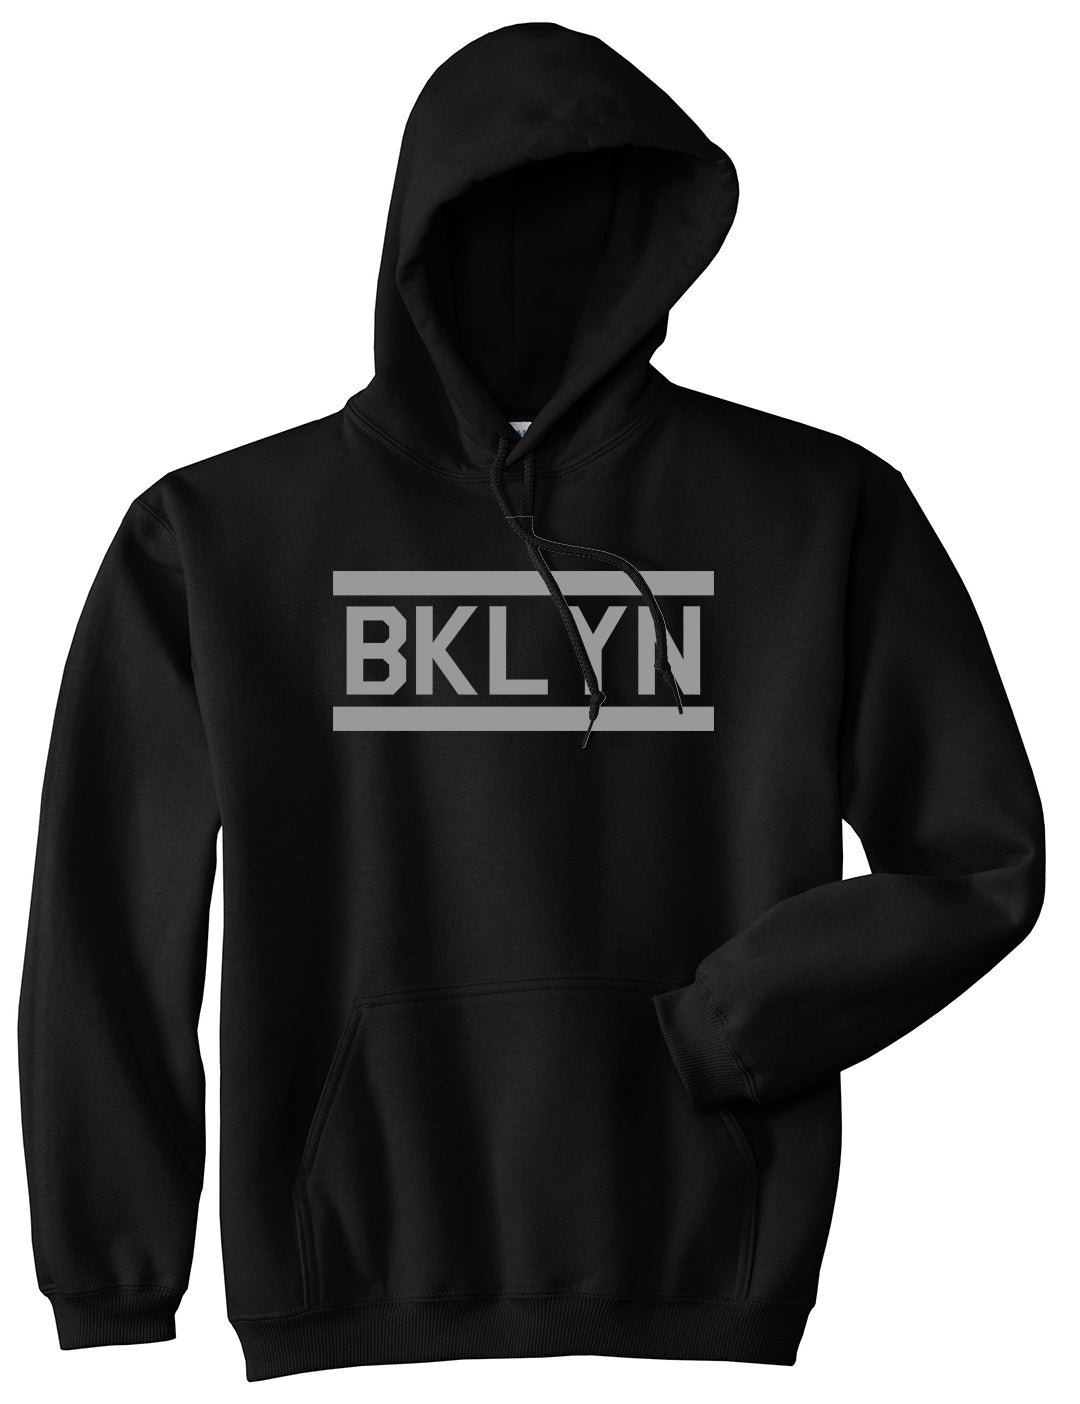 BKLYN Brooklyn Mens Pullover Hoodie Black by Kings Of NY